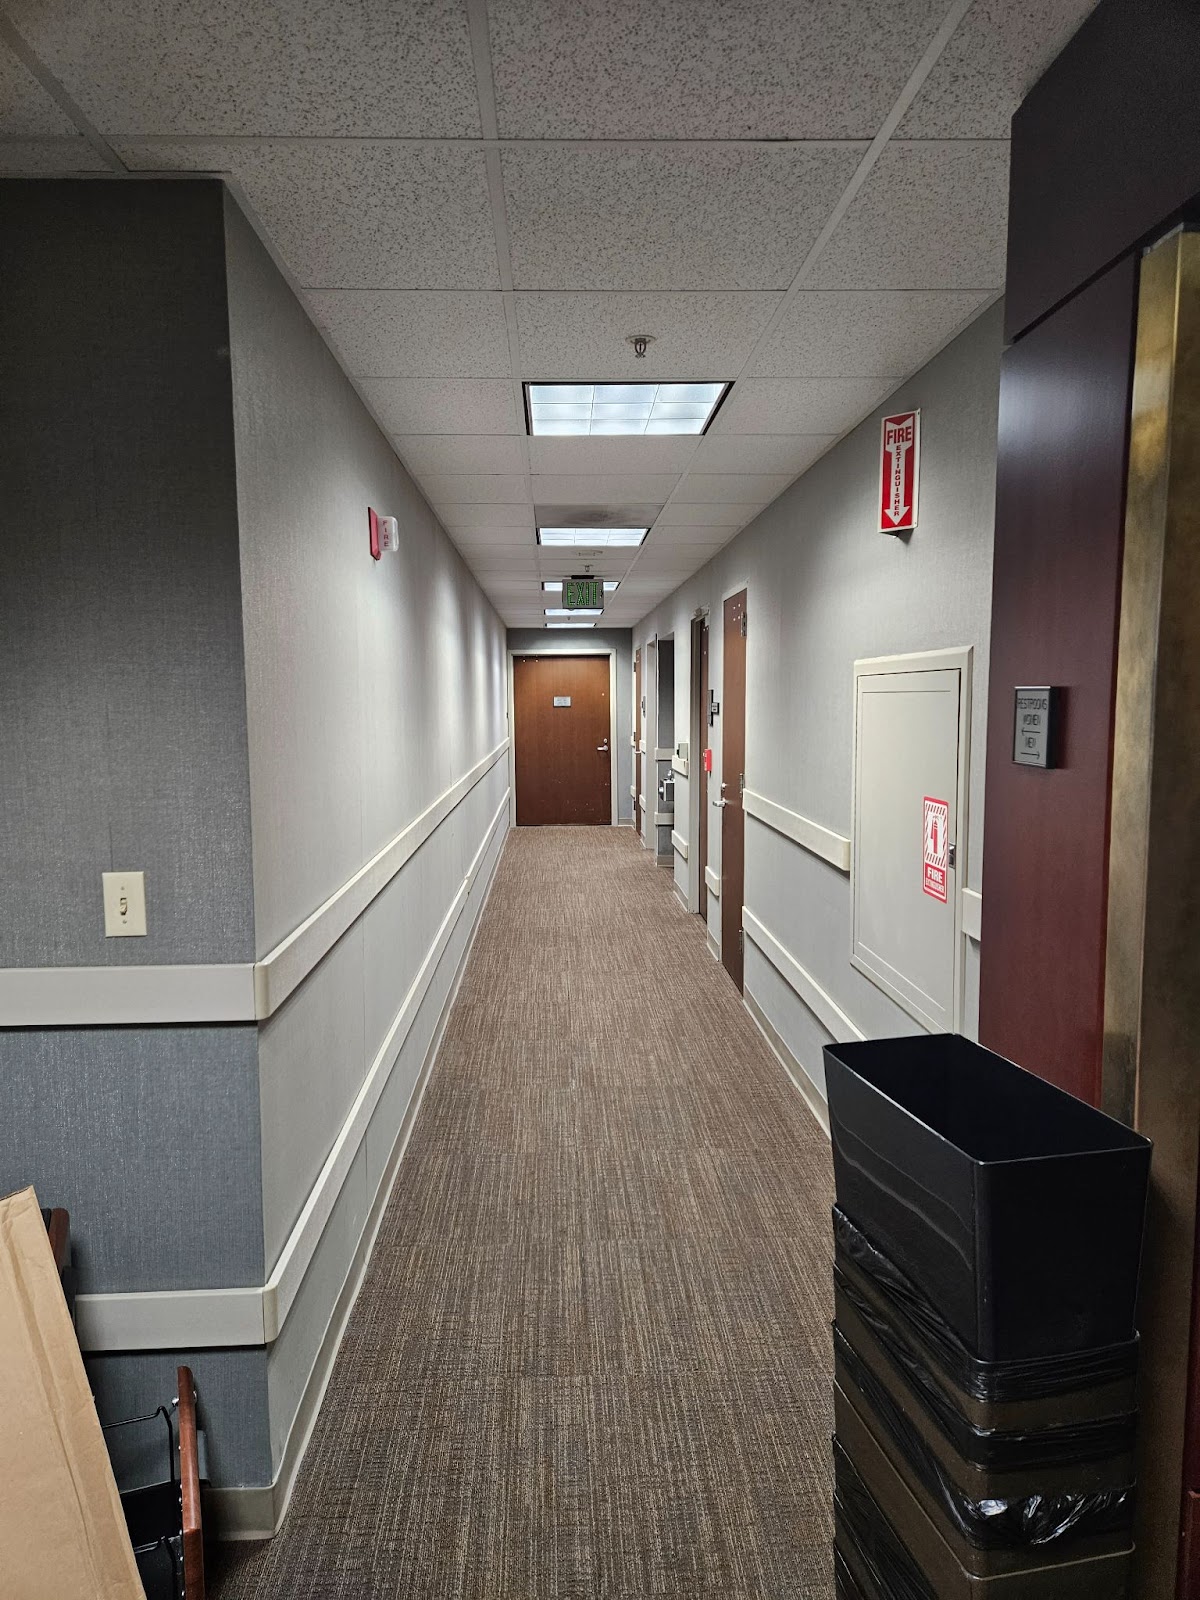 A grey hallway with brown wooden doors. 